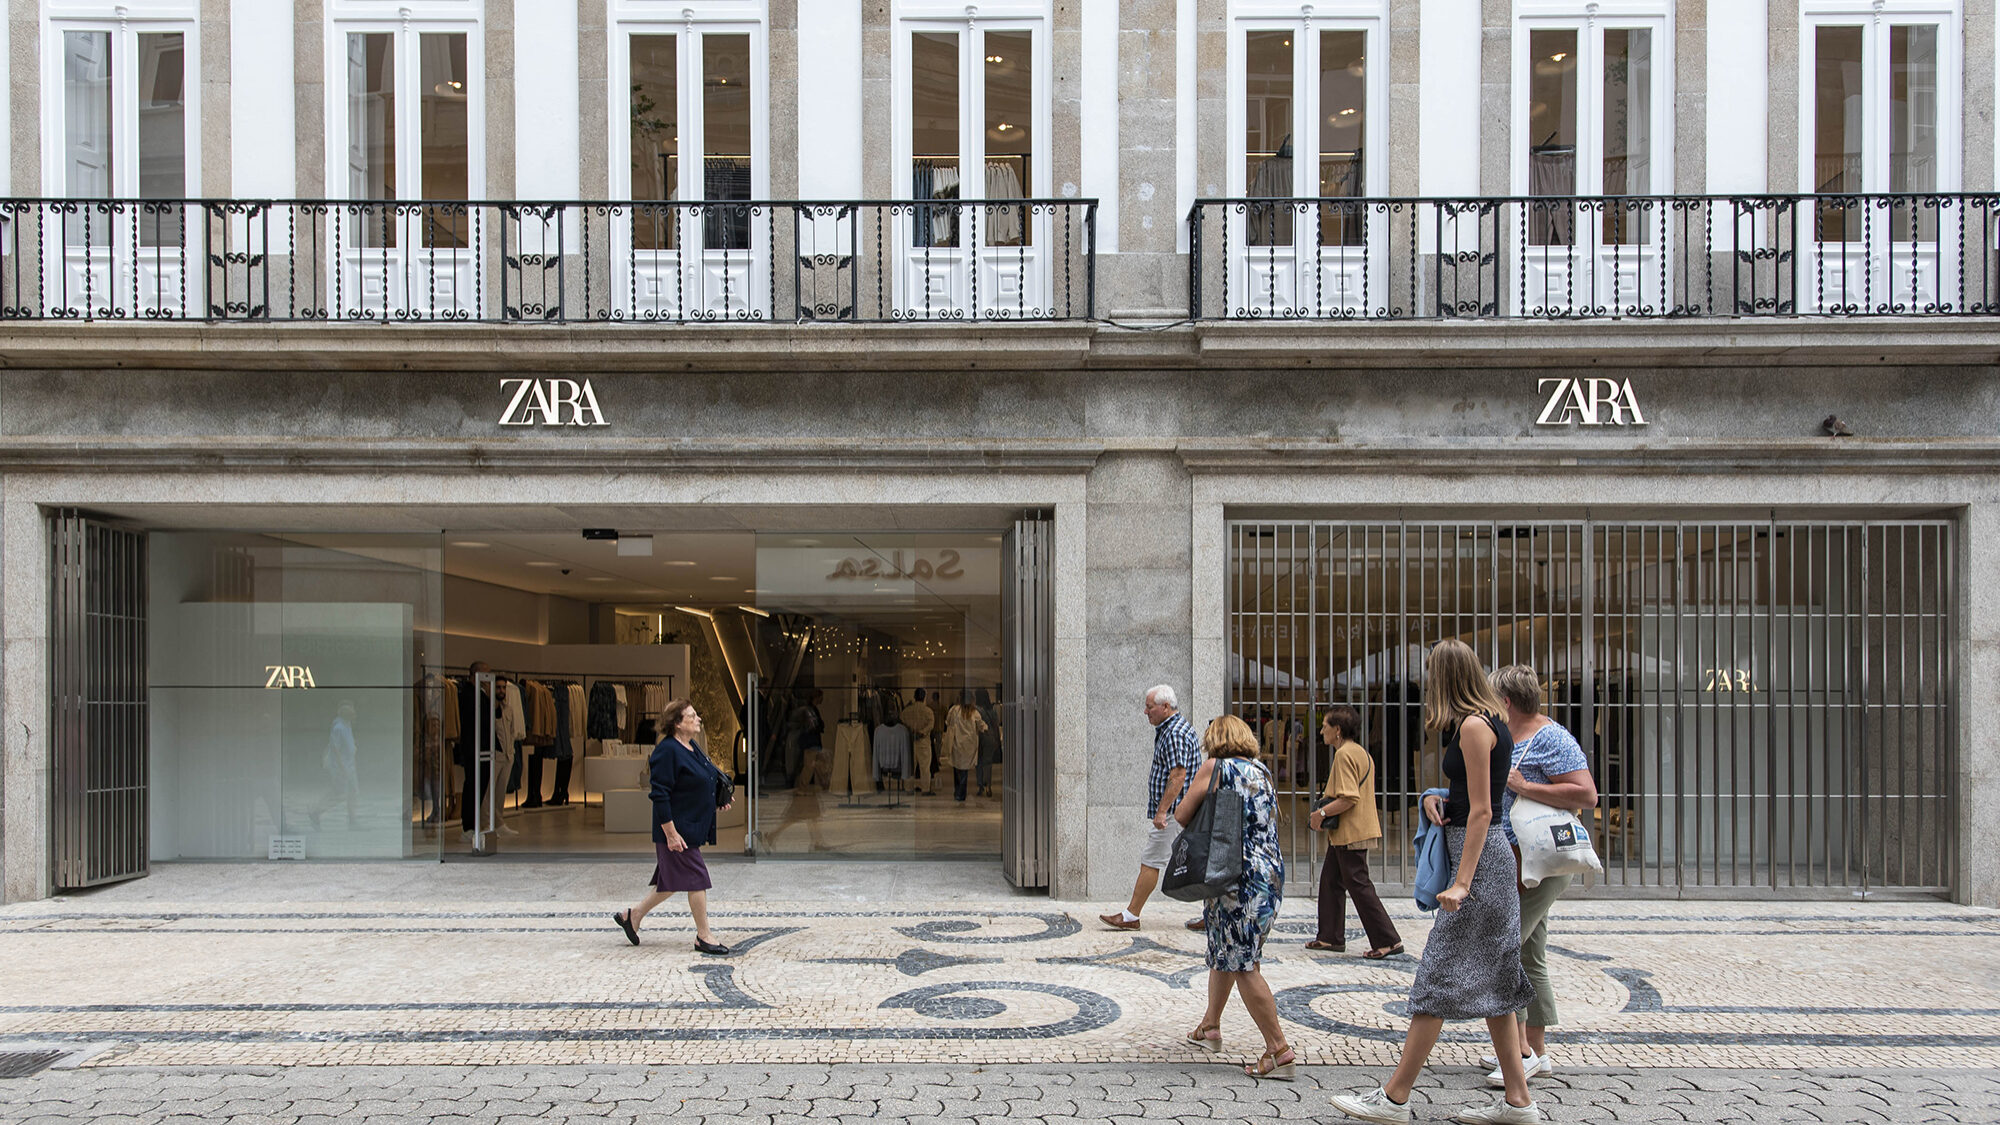 Grupo que detém a Zara vende lojas e abandona mercado russo